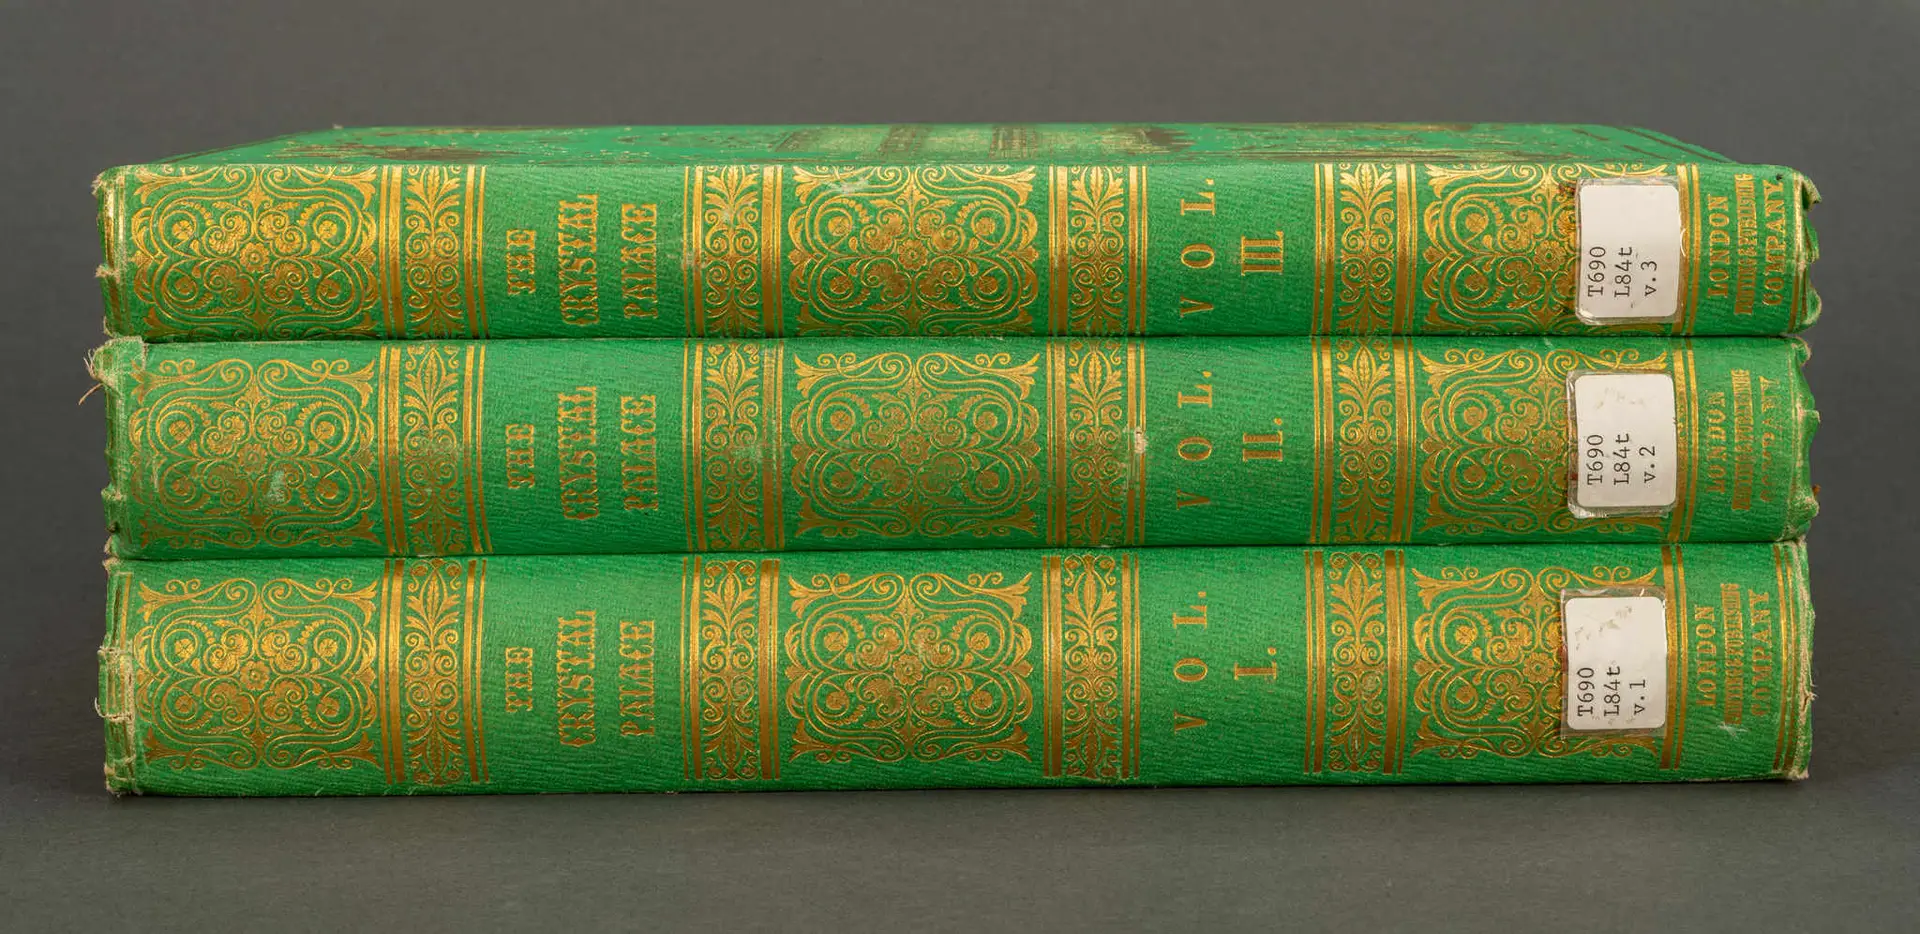 Livros verdes do século XIX escondem um segredo venenoso